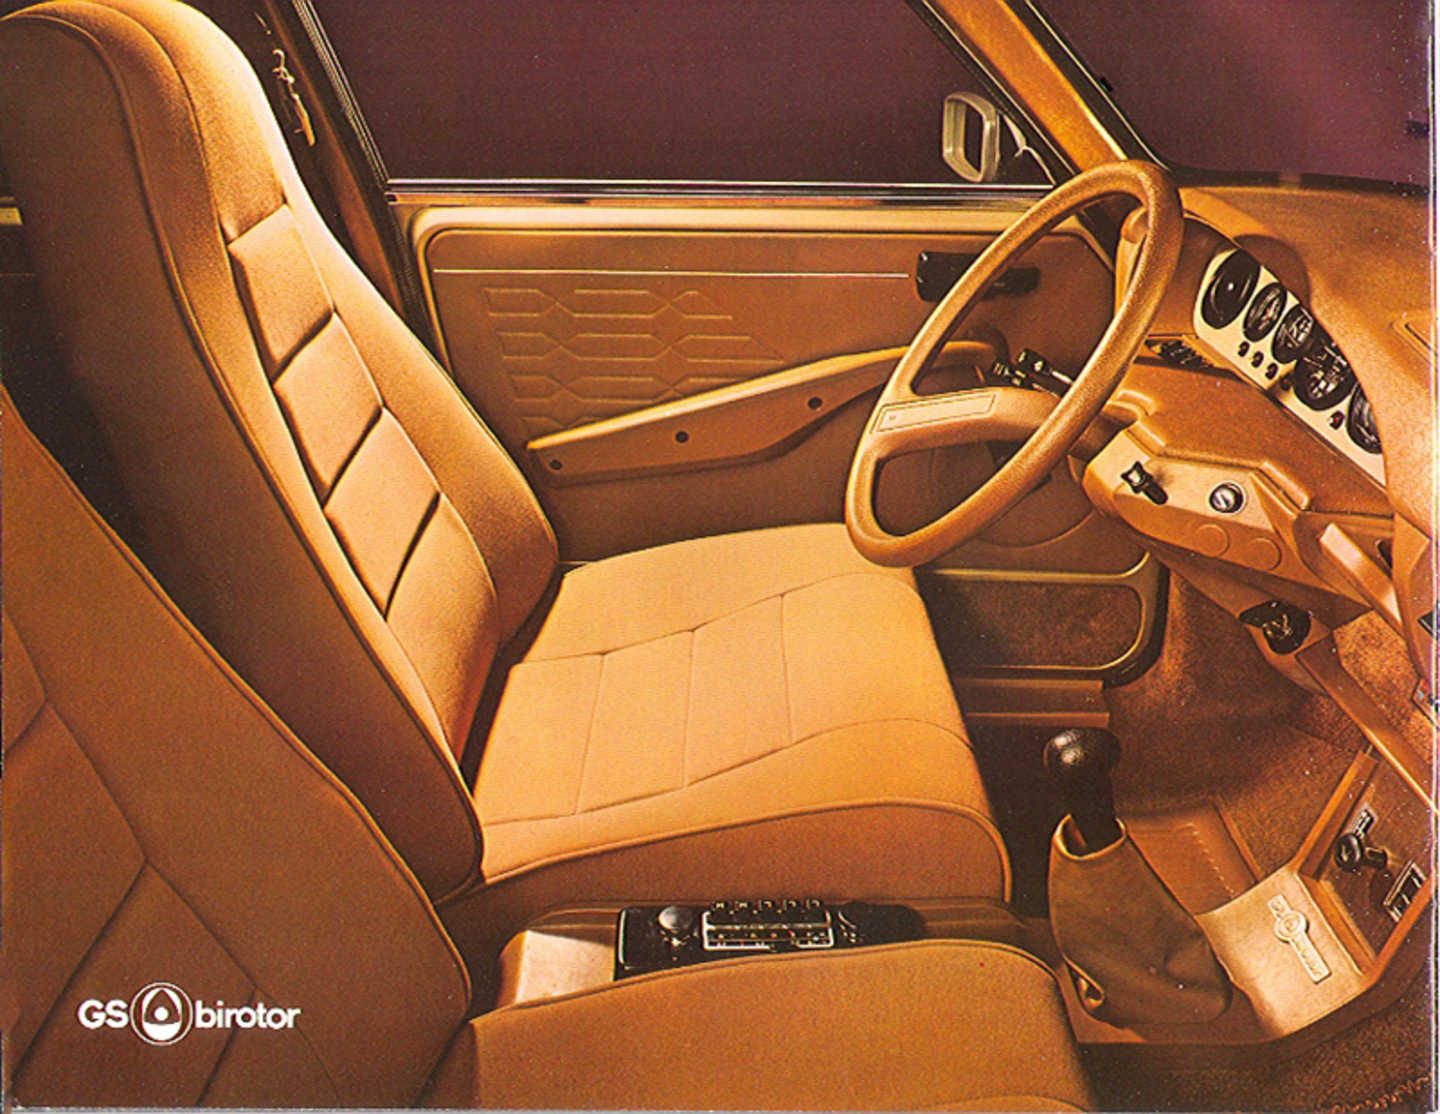 L'intérieur "cosy" de la GS Birotor, modèle haut de gamme !